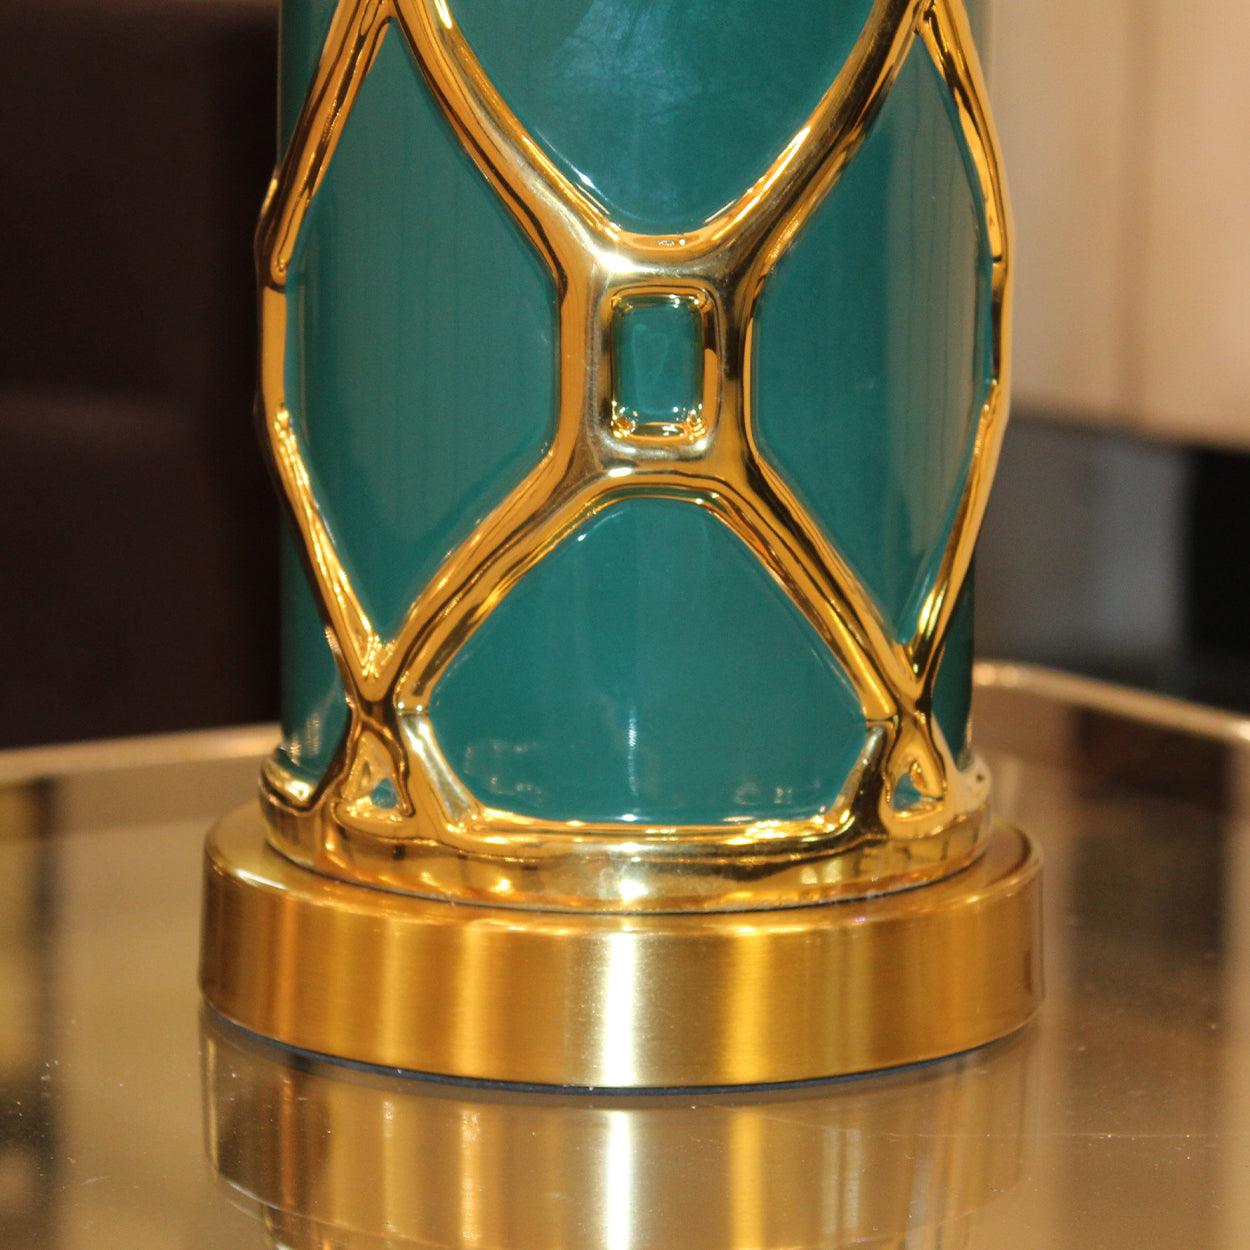 ROWAN MODERN GOLDEN STRIPES CERAMIC TABLE LAMP BEDSIDE LAMP - Ankur Lighting